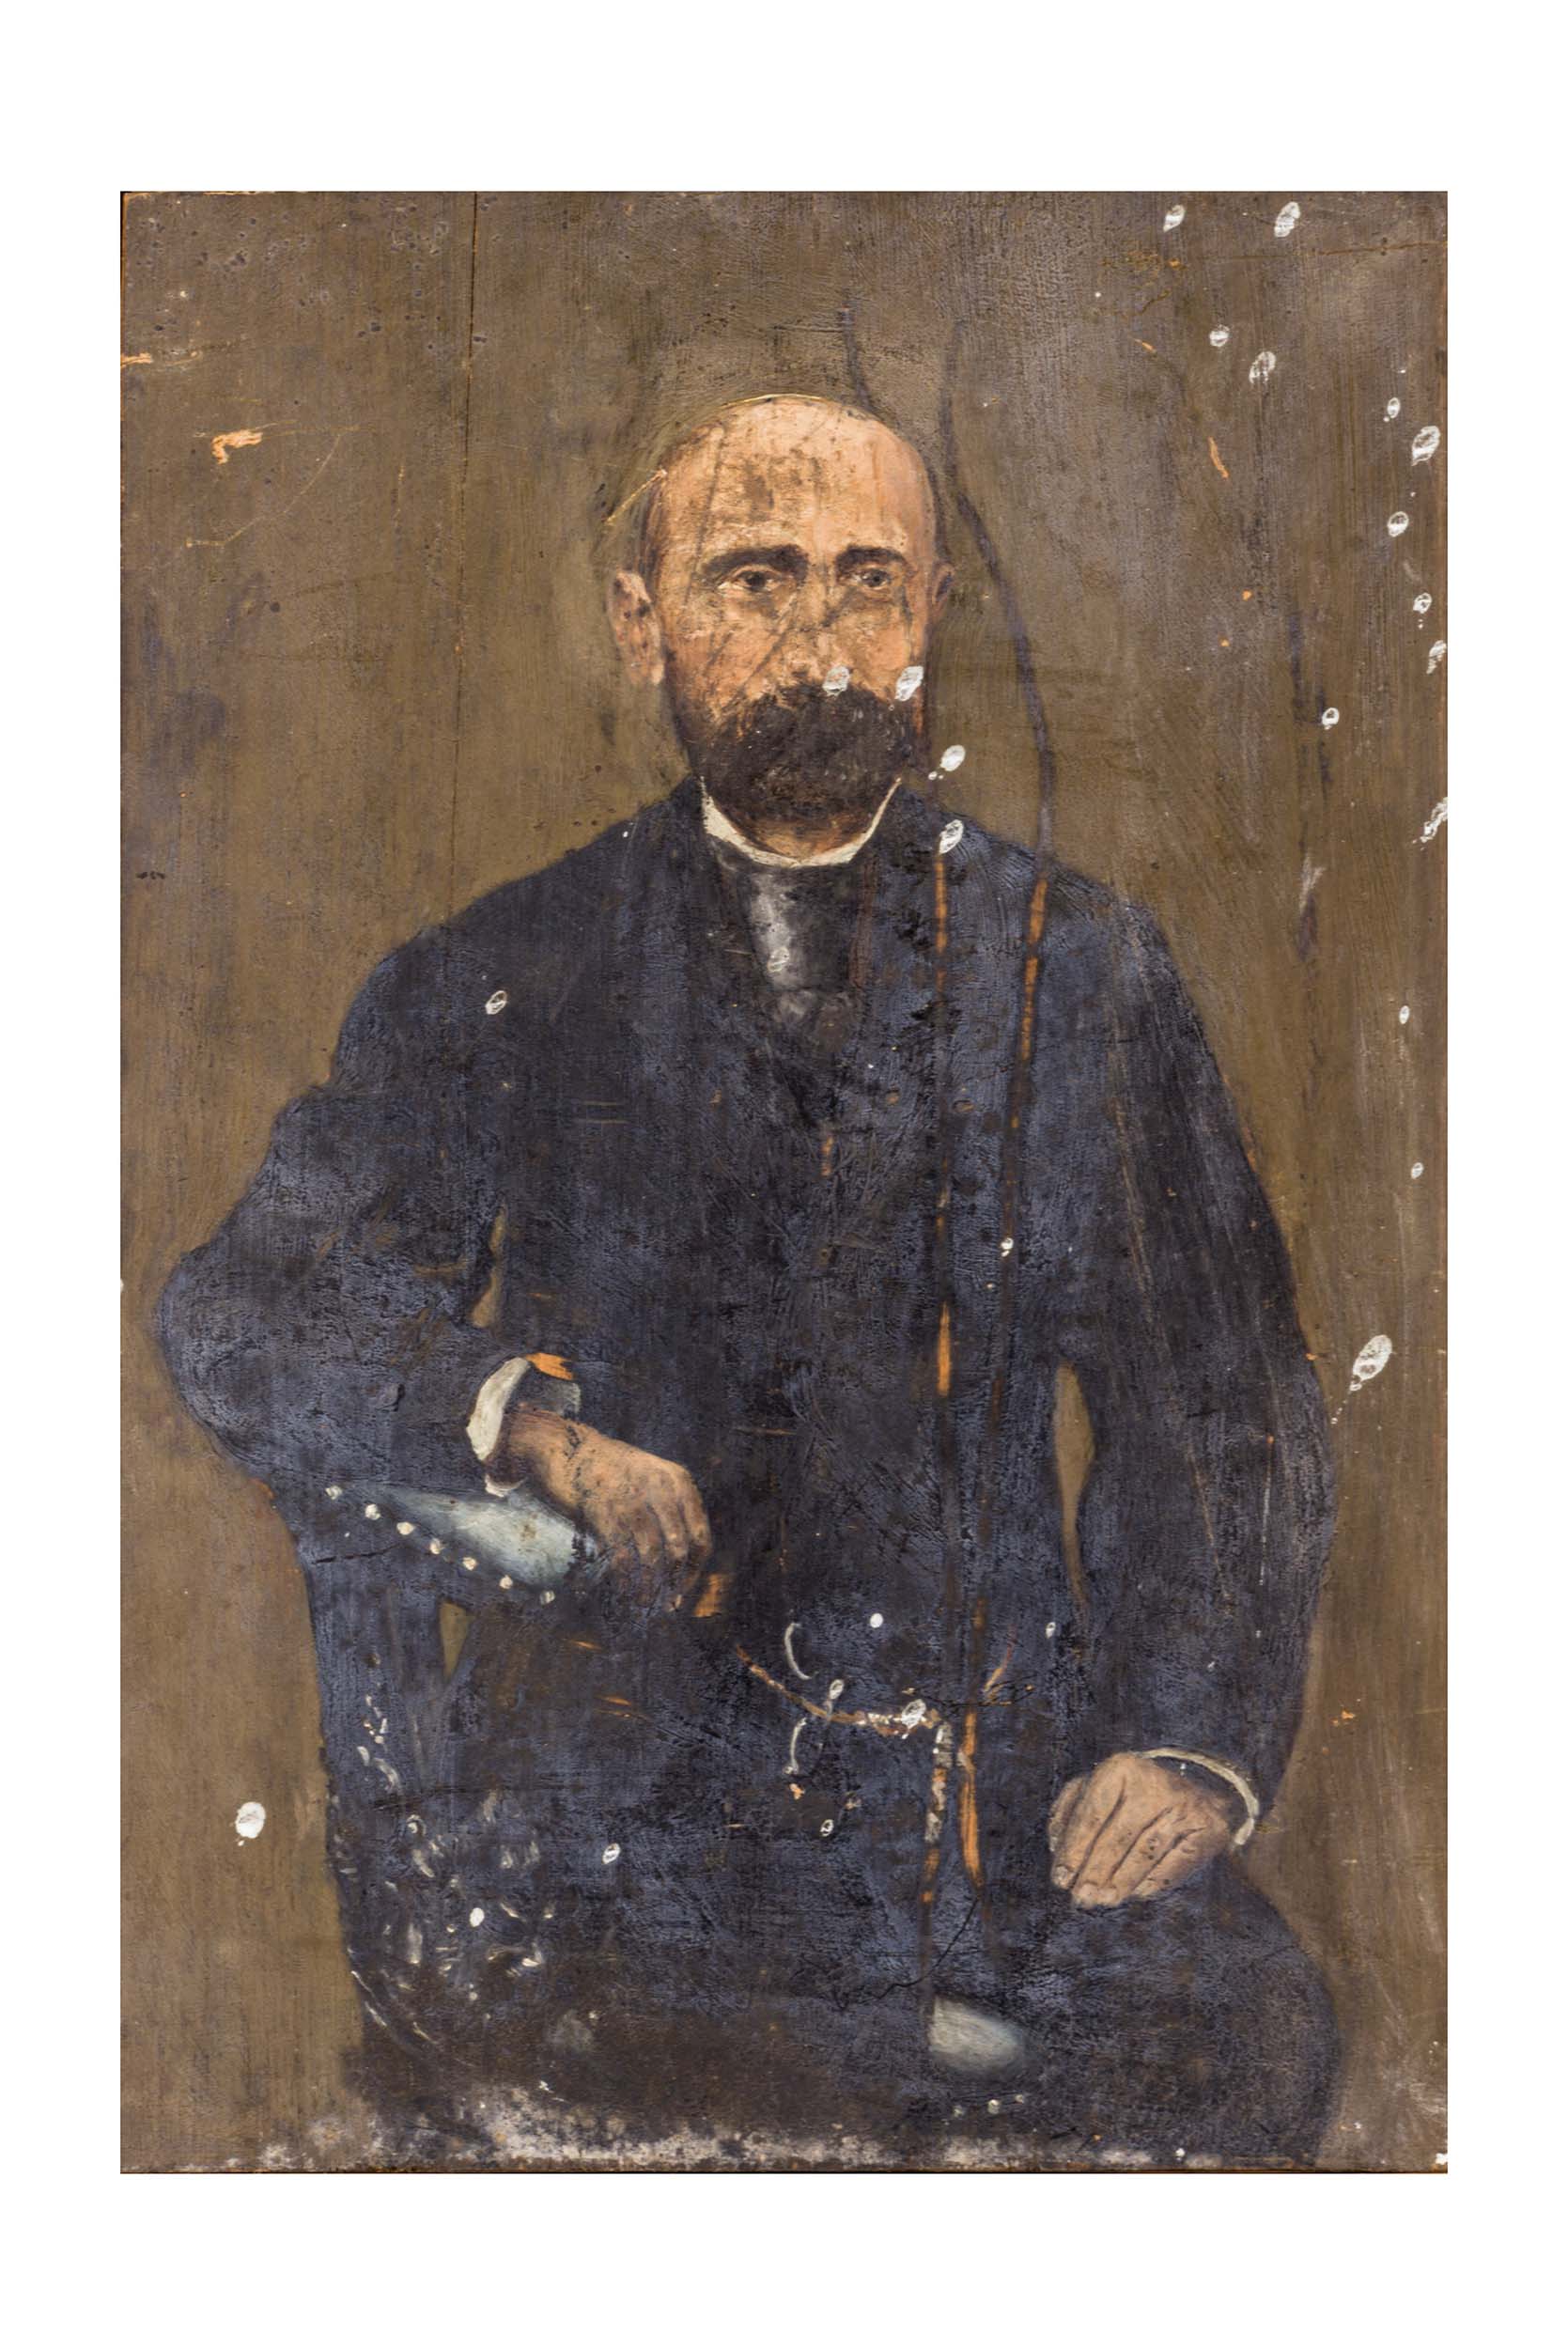 Ritratto di uomo, Ritratto di uomo (dipinto) di ignoto di ambito campano (attribuito) - ambito campano (metà/ inizio XIX-XX?)